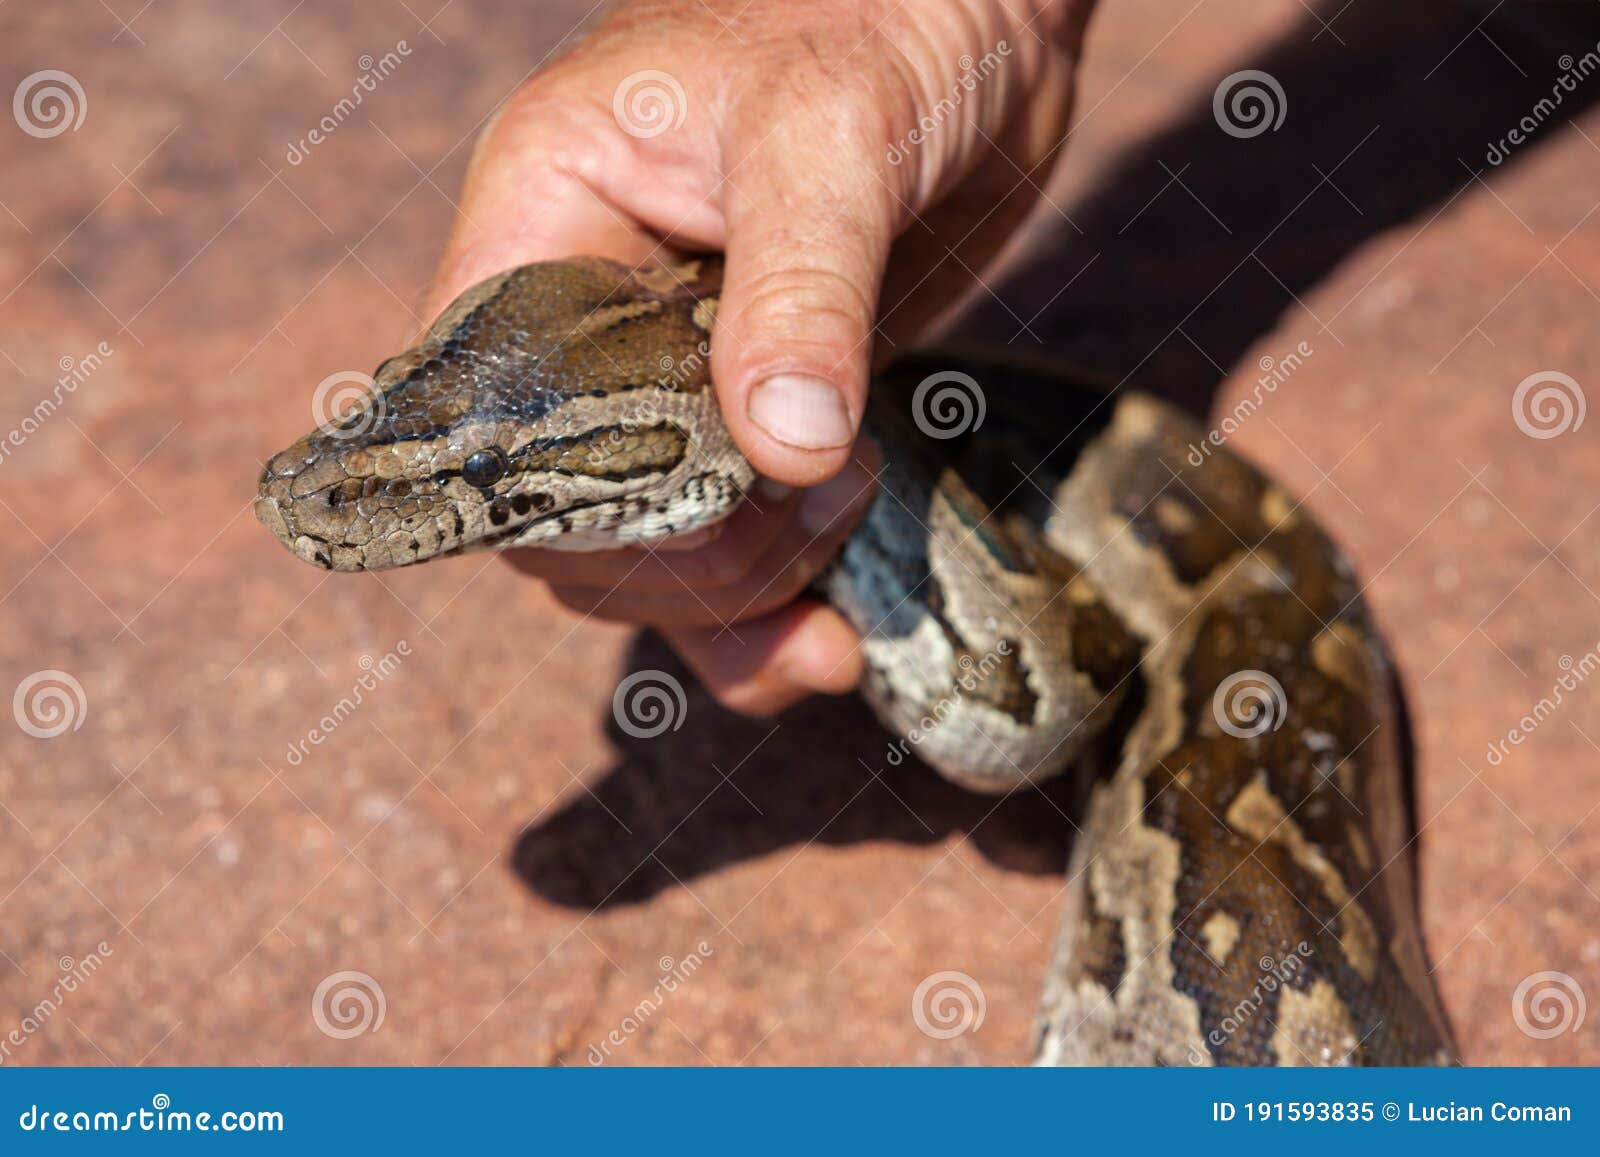 Capture du serpent image stock. Image du géant, loquet - 191593835